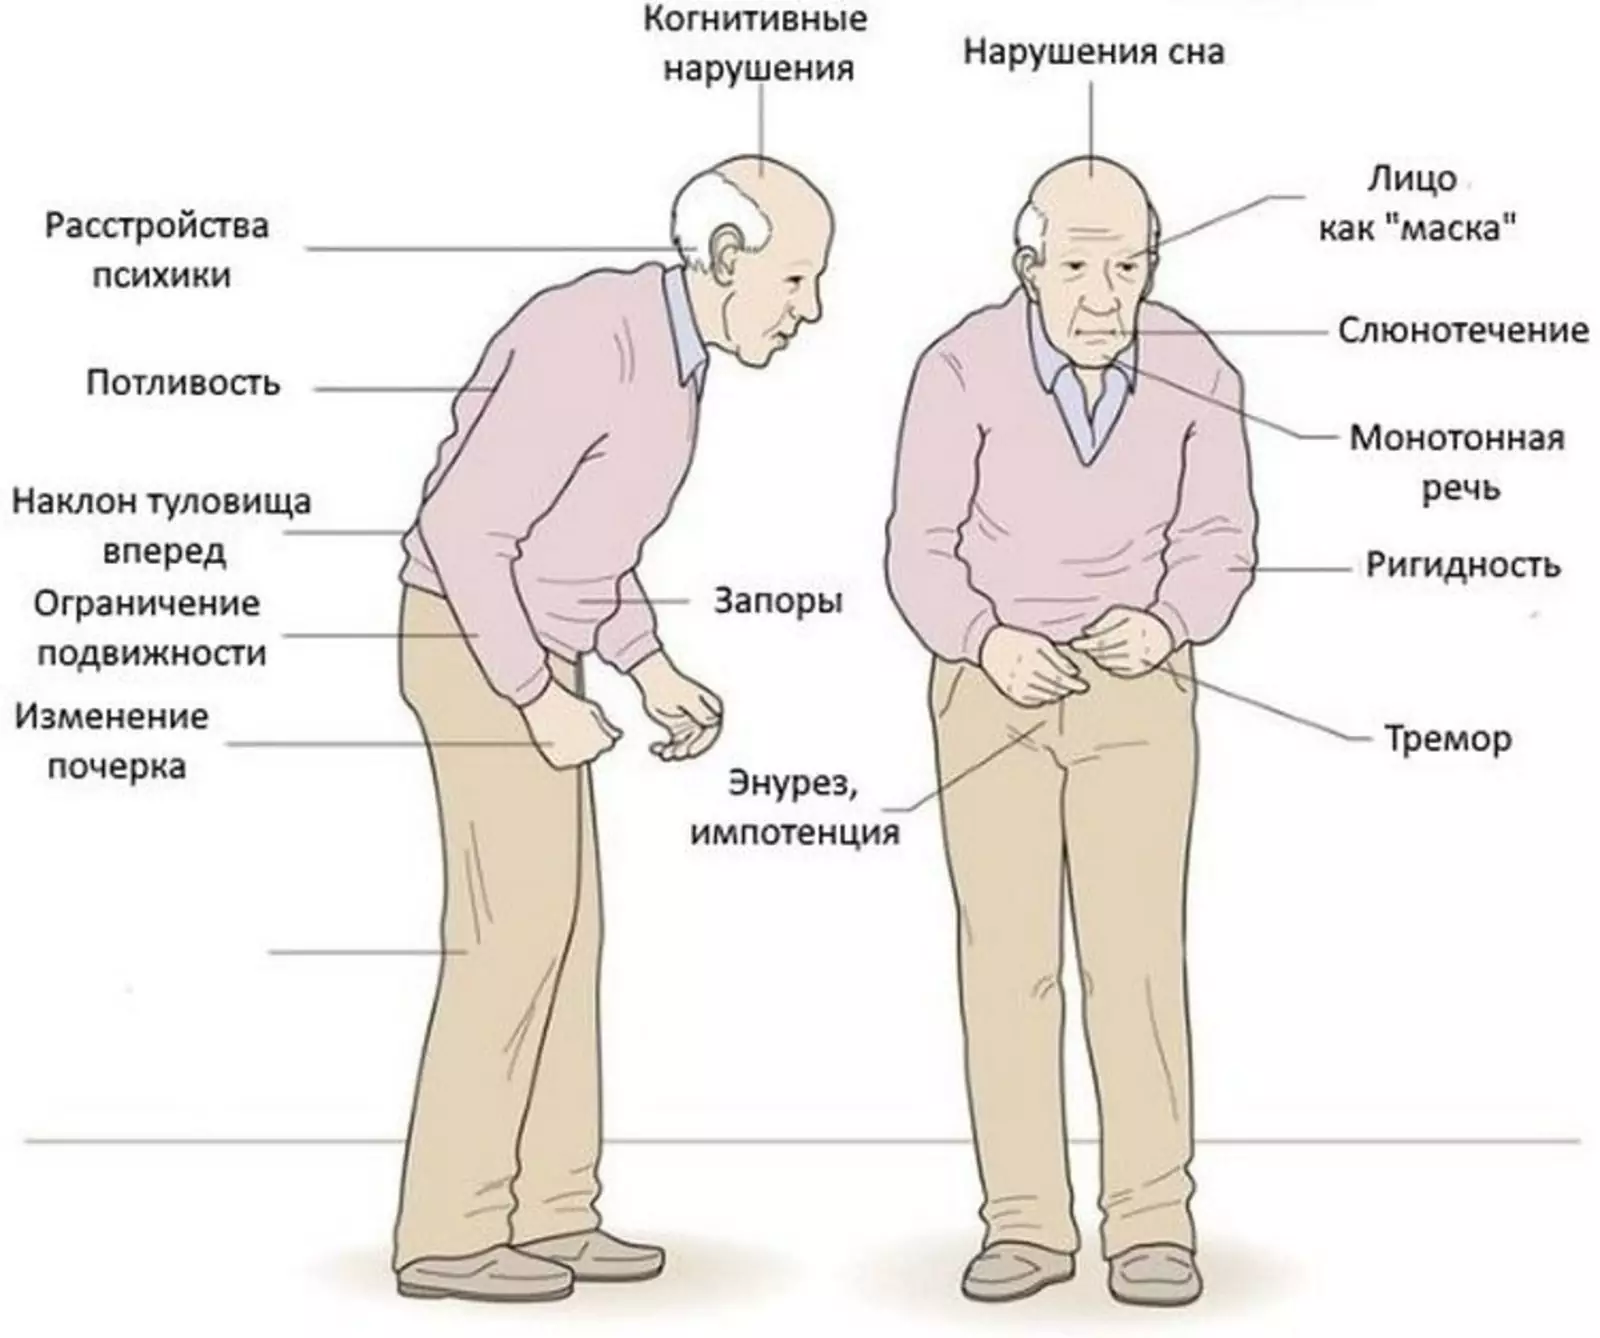 Паркинсон продолжительность жизни. Синдром паркинсонизма симптомы. Клинические синдромы при болезни Паркинсона. Болезнь Паркинсона симптомы и признаки у пожилых. Паркинсон проявления.